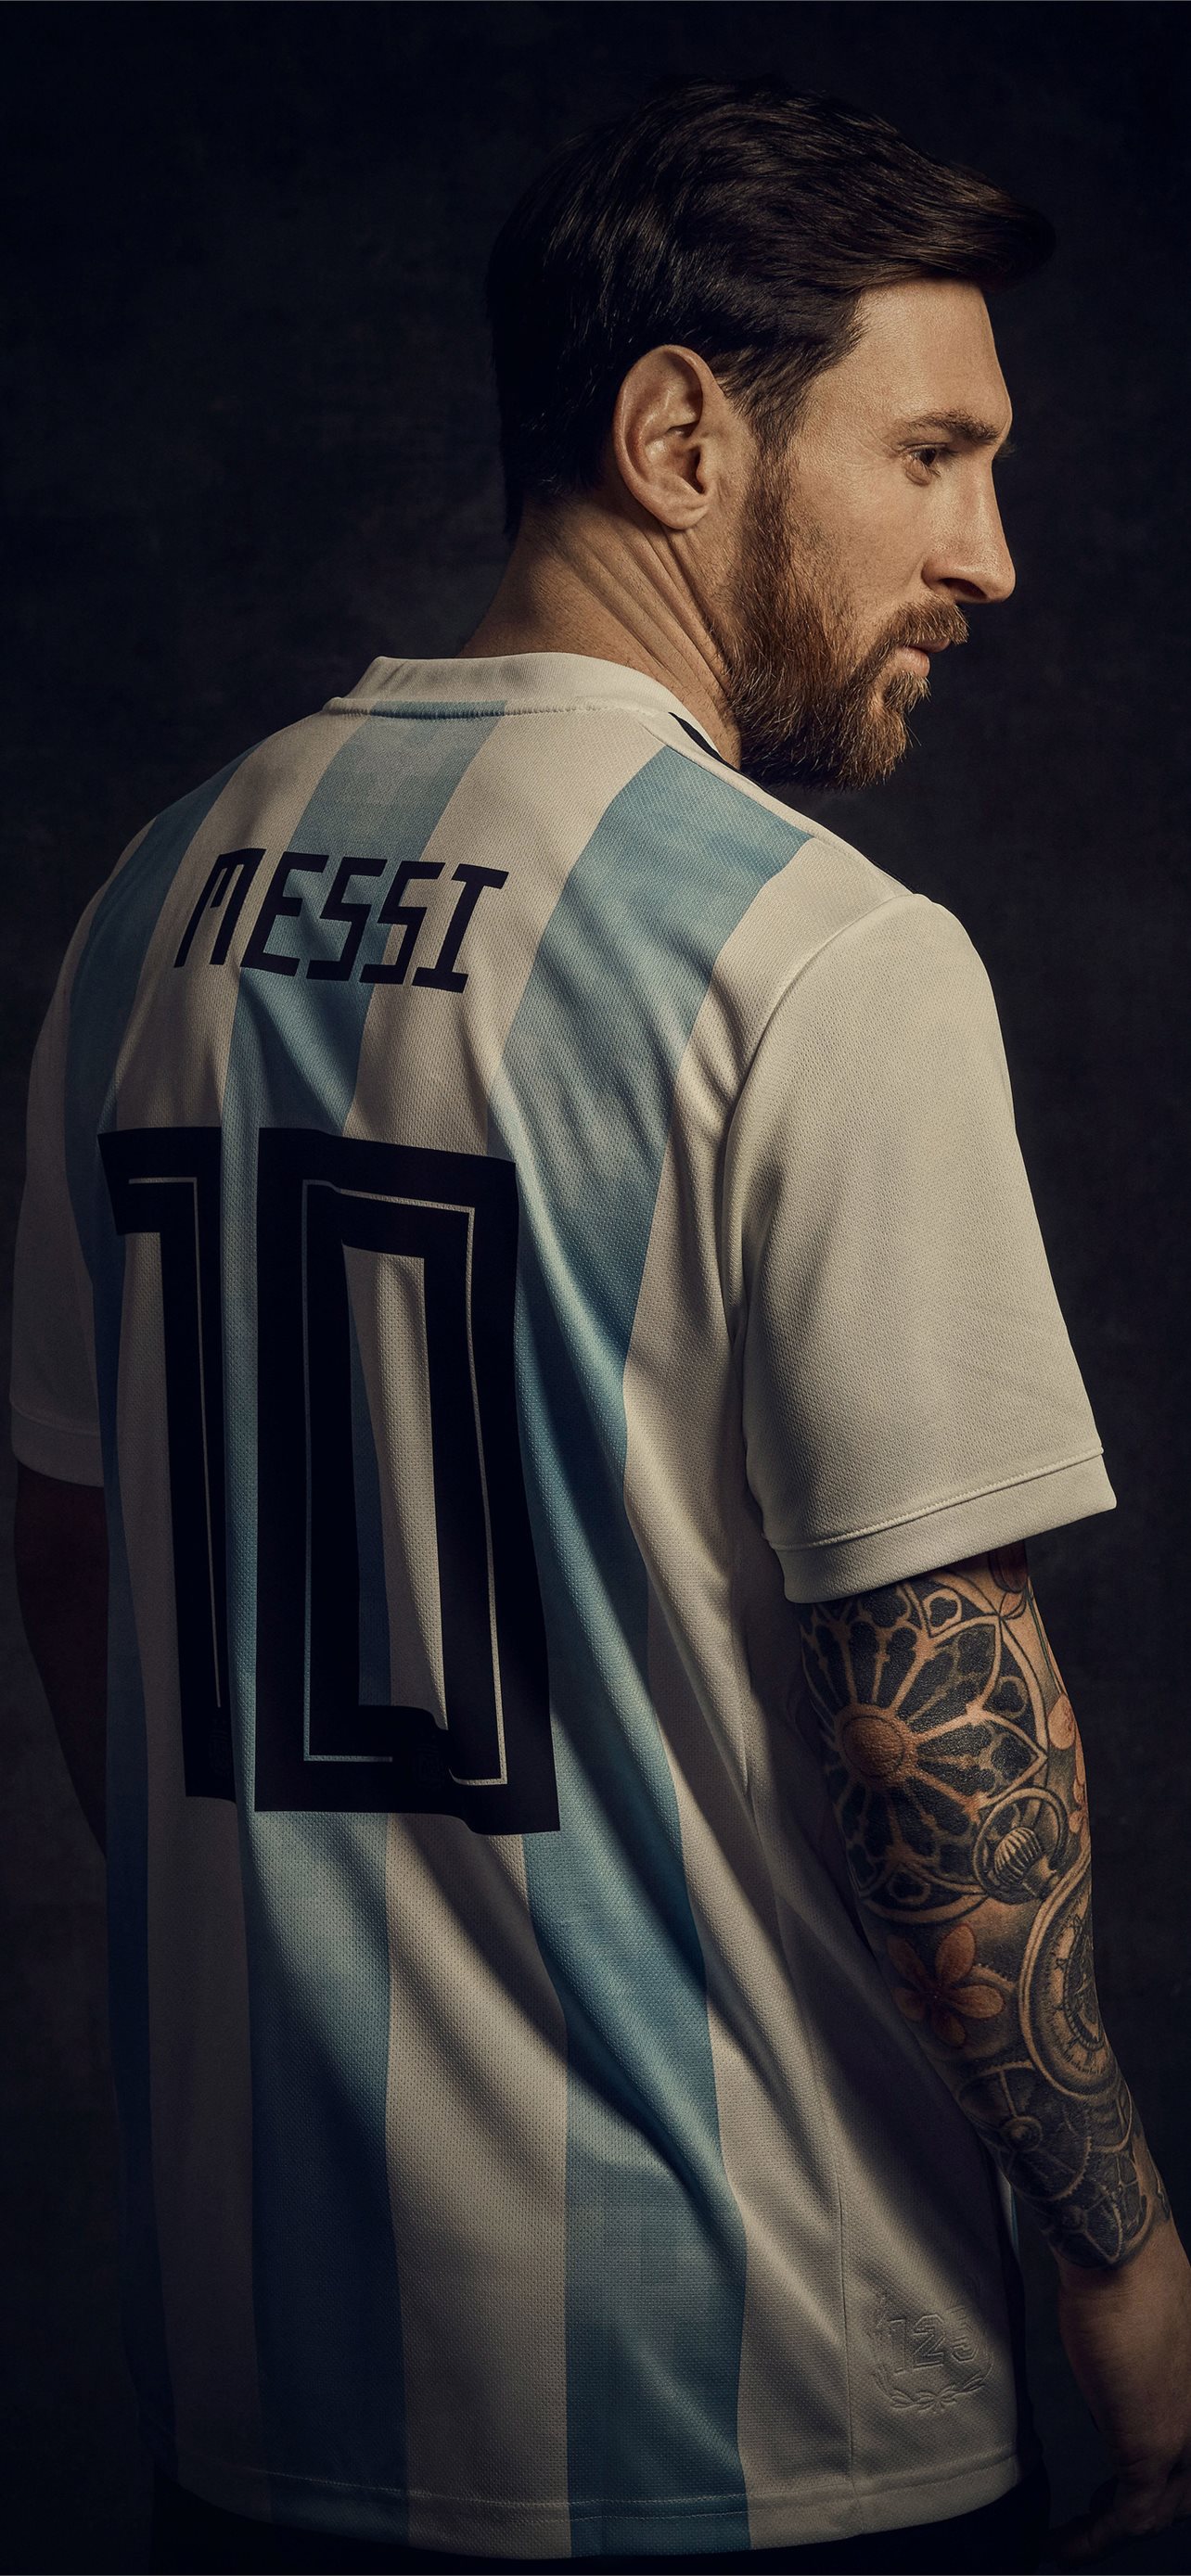 Phải gì bạn mới thật sự quý mến về Messi? Đó chính là đam mê của Messi trong sân cỏ, đóng góp nhiều cho bóng đá và cho những người hâm mộ. Xem hình nền HD của Messi để cảm nhận điều đó.